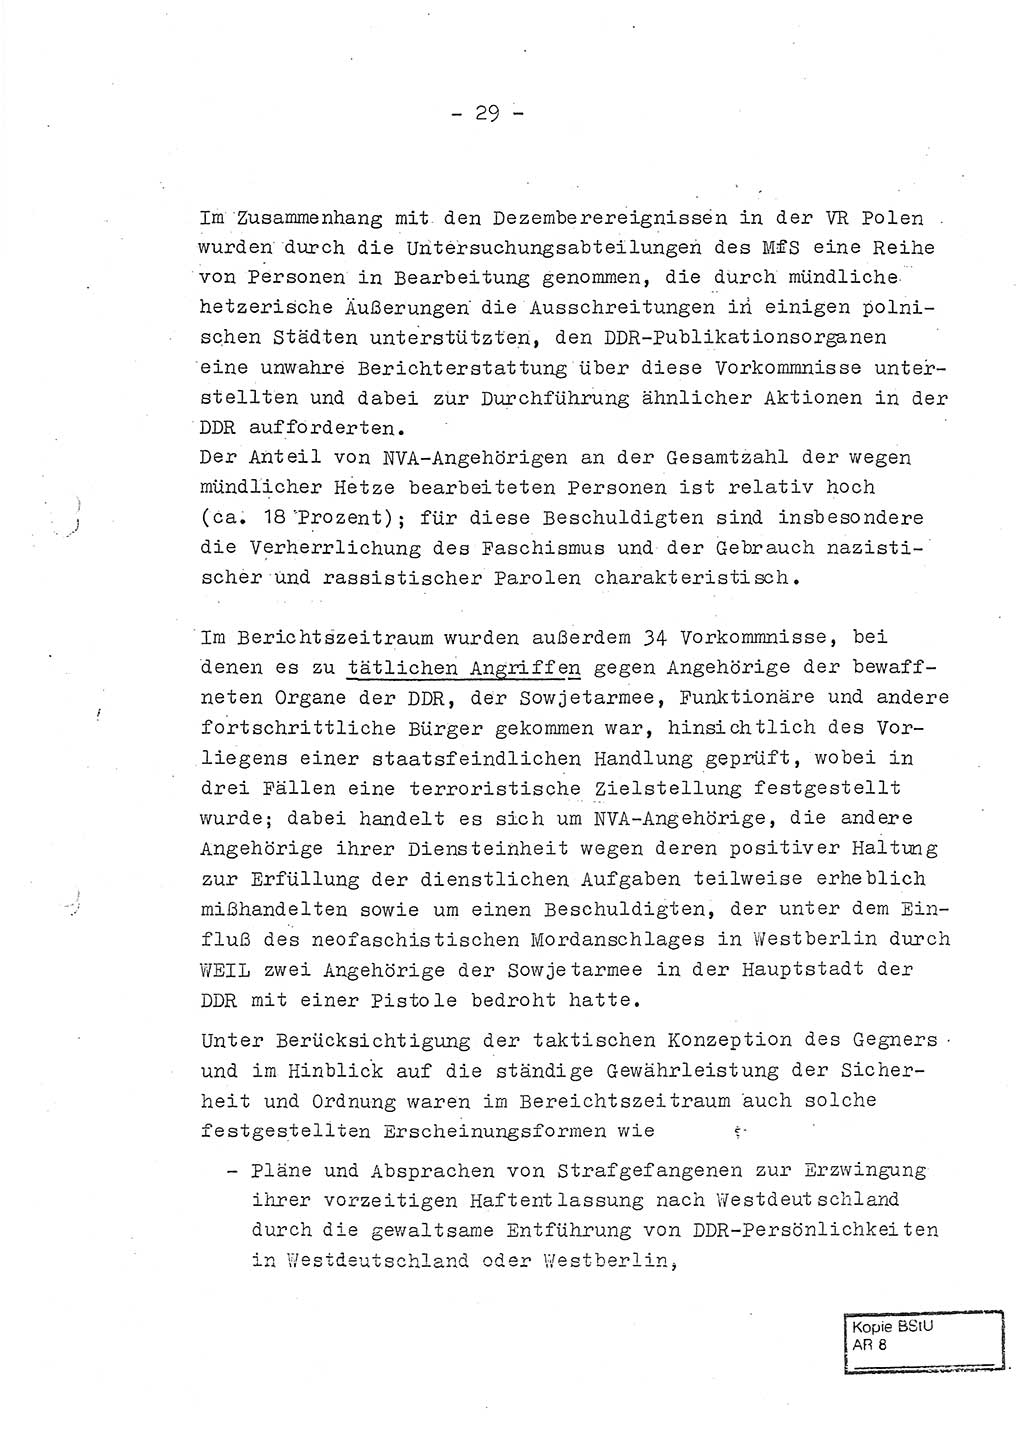 Jahresbericht der Hauptabteilung (HA) Ⅸ 1970, Ministerium für Staatssicherheit (MfS) der Deutschen Demokratischen Republik (DDR), Berlin 1971, Seite 29 (J.-Ber. MfS DDR HA Ⅸ /70 1971, S. 29)